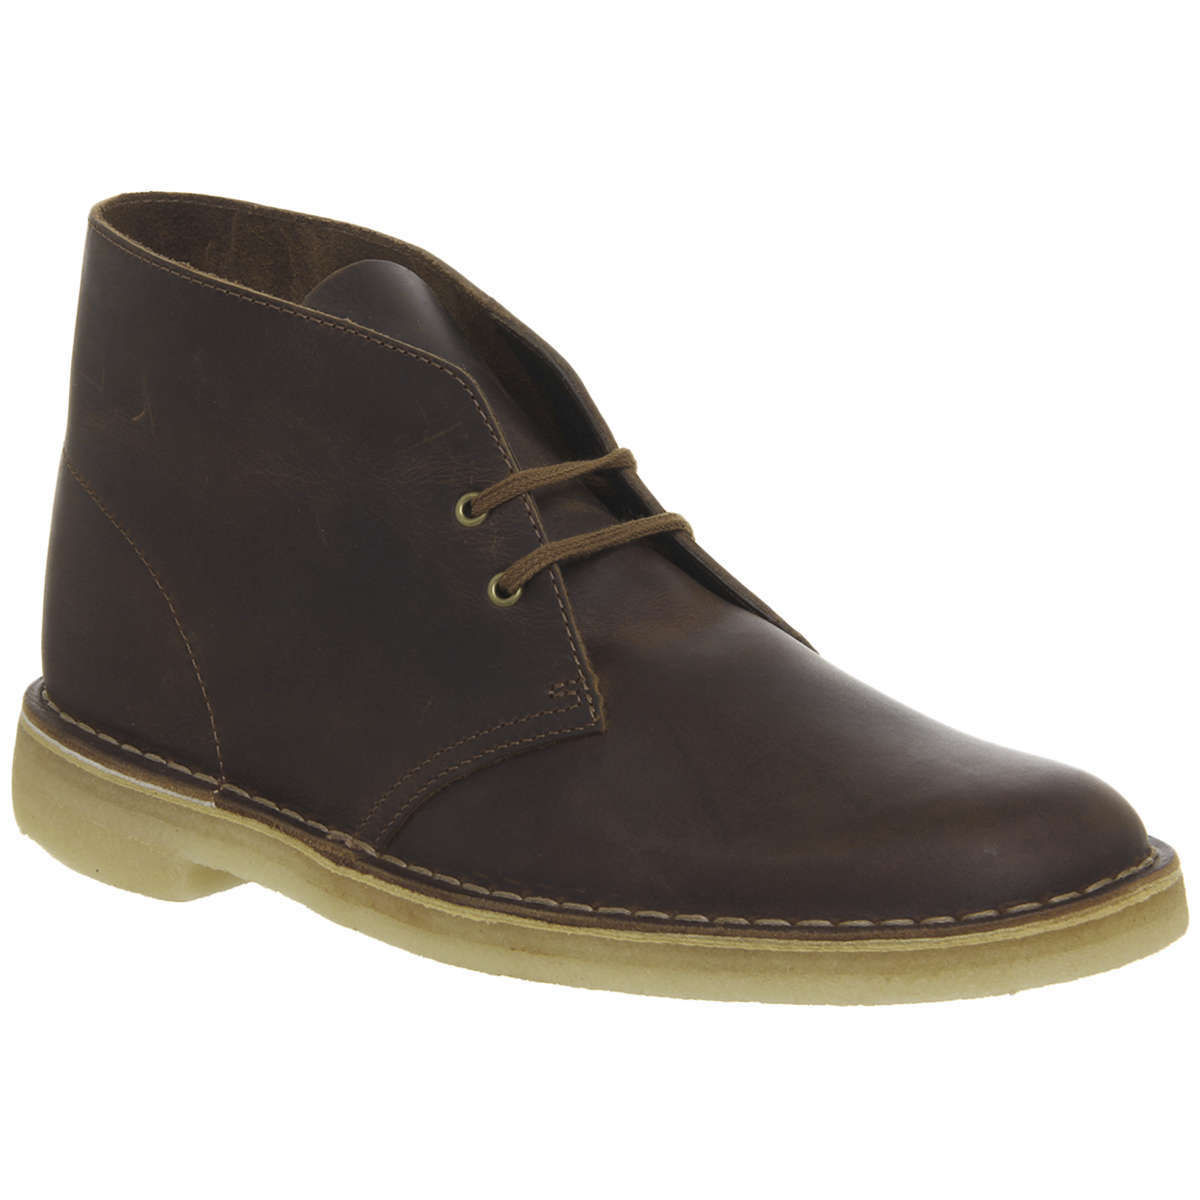 Clarks Originals Desert Boot Leather Men's Boots#color_beeswax